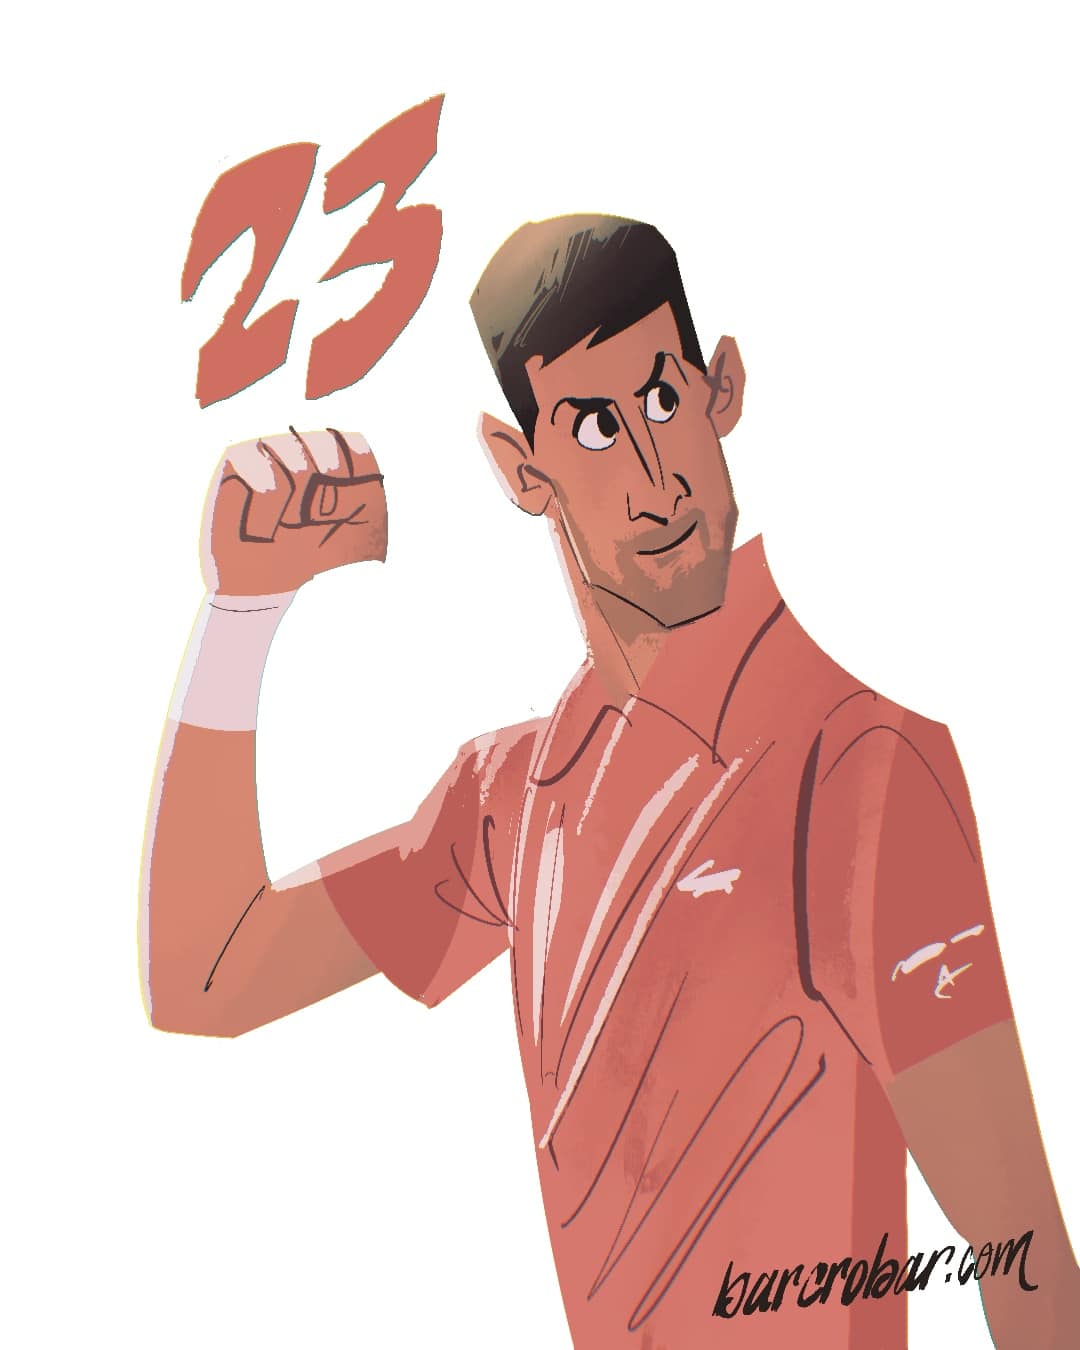 Roland-Garros: Djokovic dans la course au GOAT